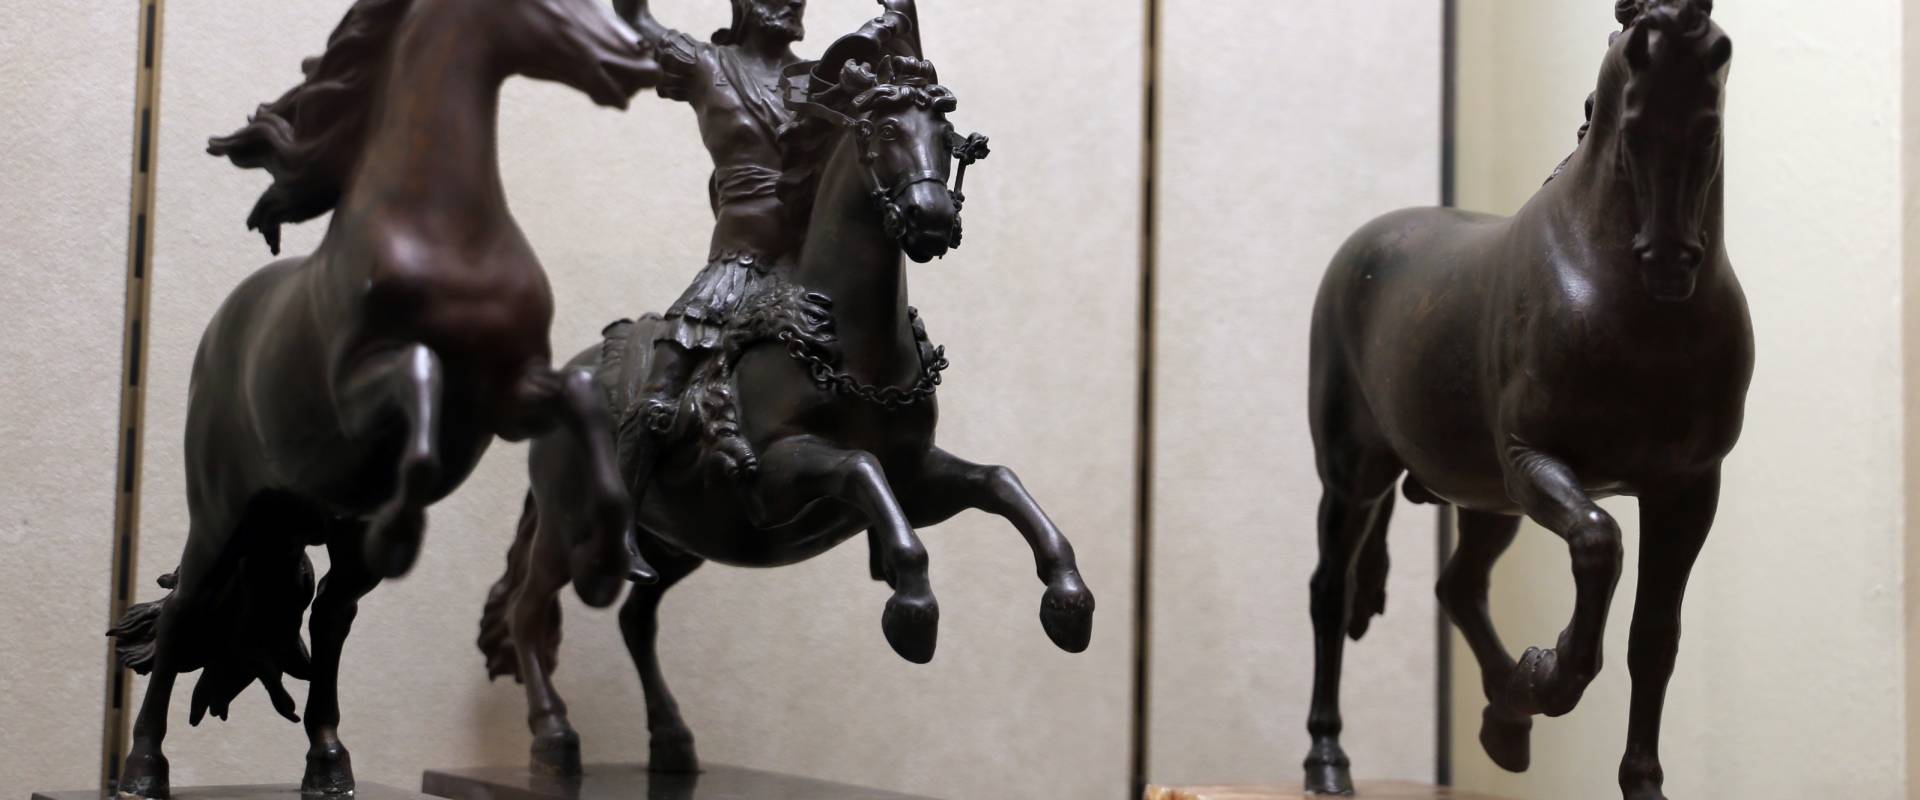 Bottega di pietro tacca, cavallo e guerriero a cavallo, e cavallo ricciuto della bottega del giambologna, 1600-50 ca photo by Sailko